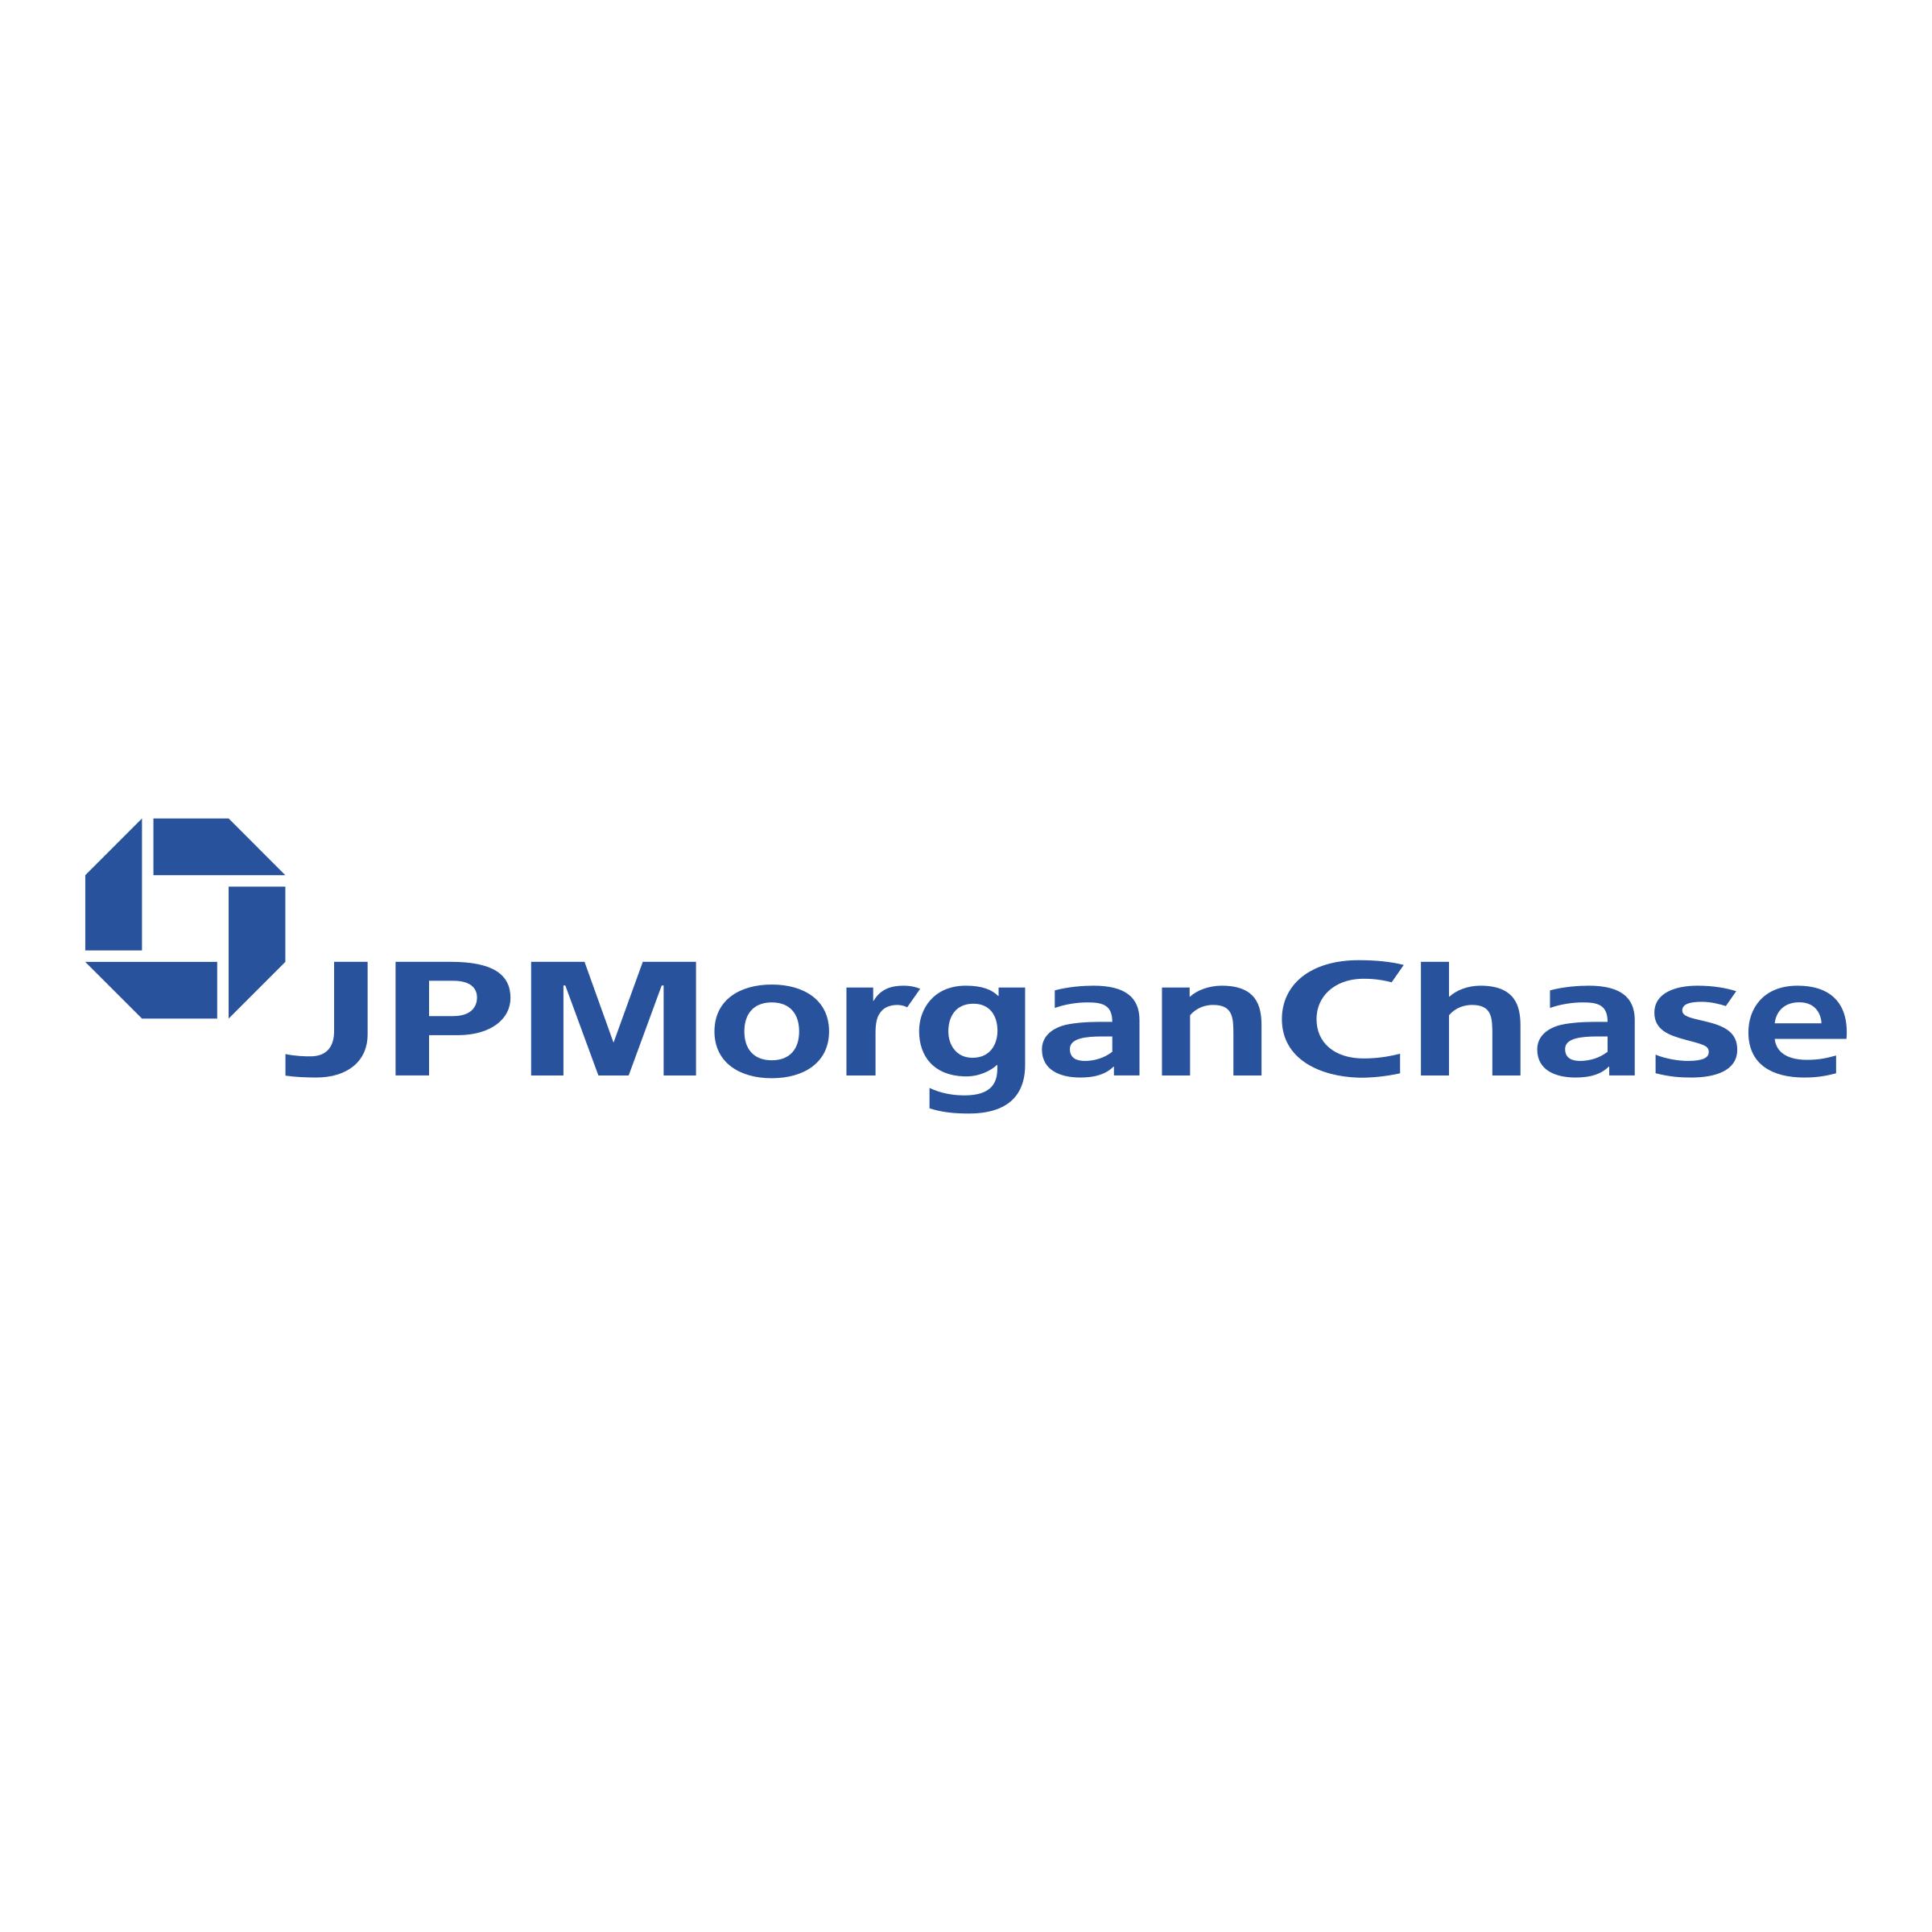 JPMorgan Chase Logo - JPMorgan Chase Logo PNG Transparent & SVG Vector